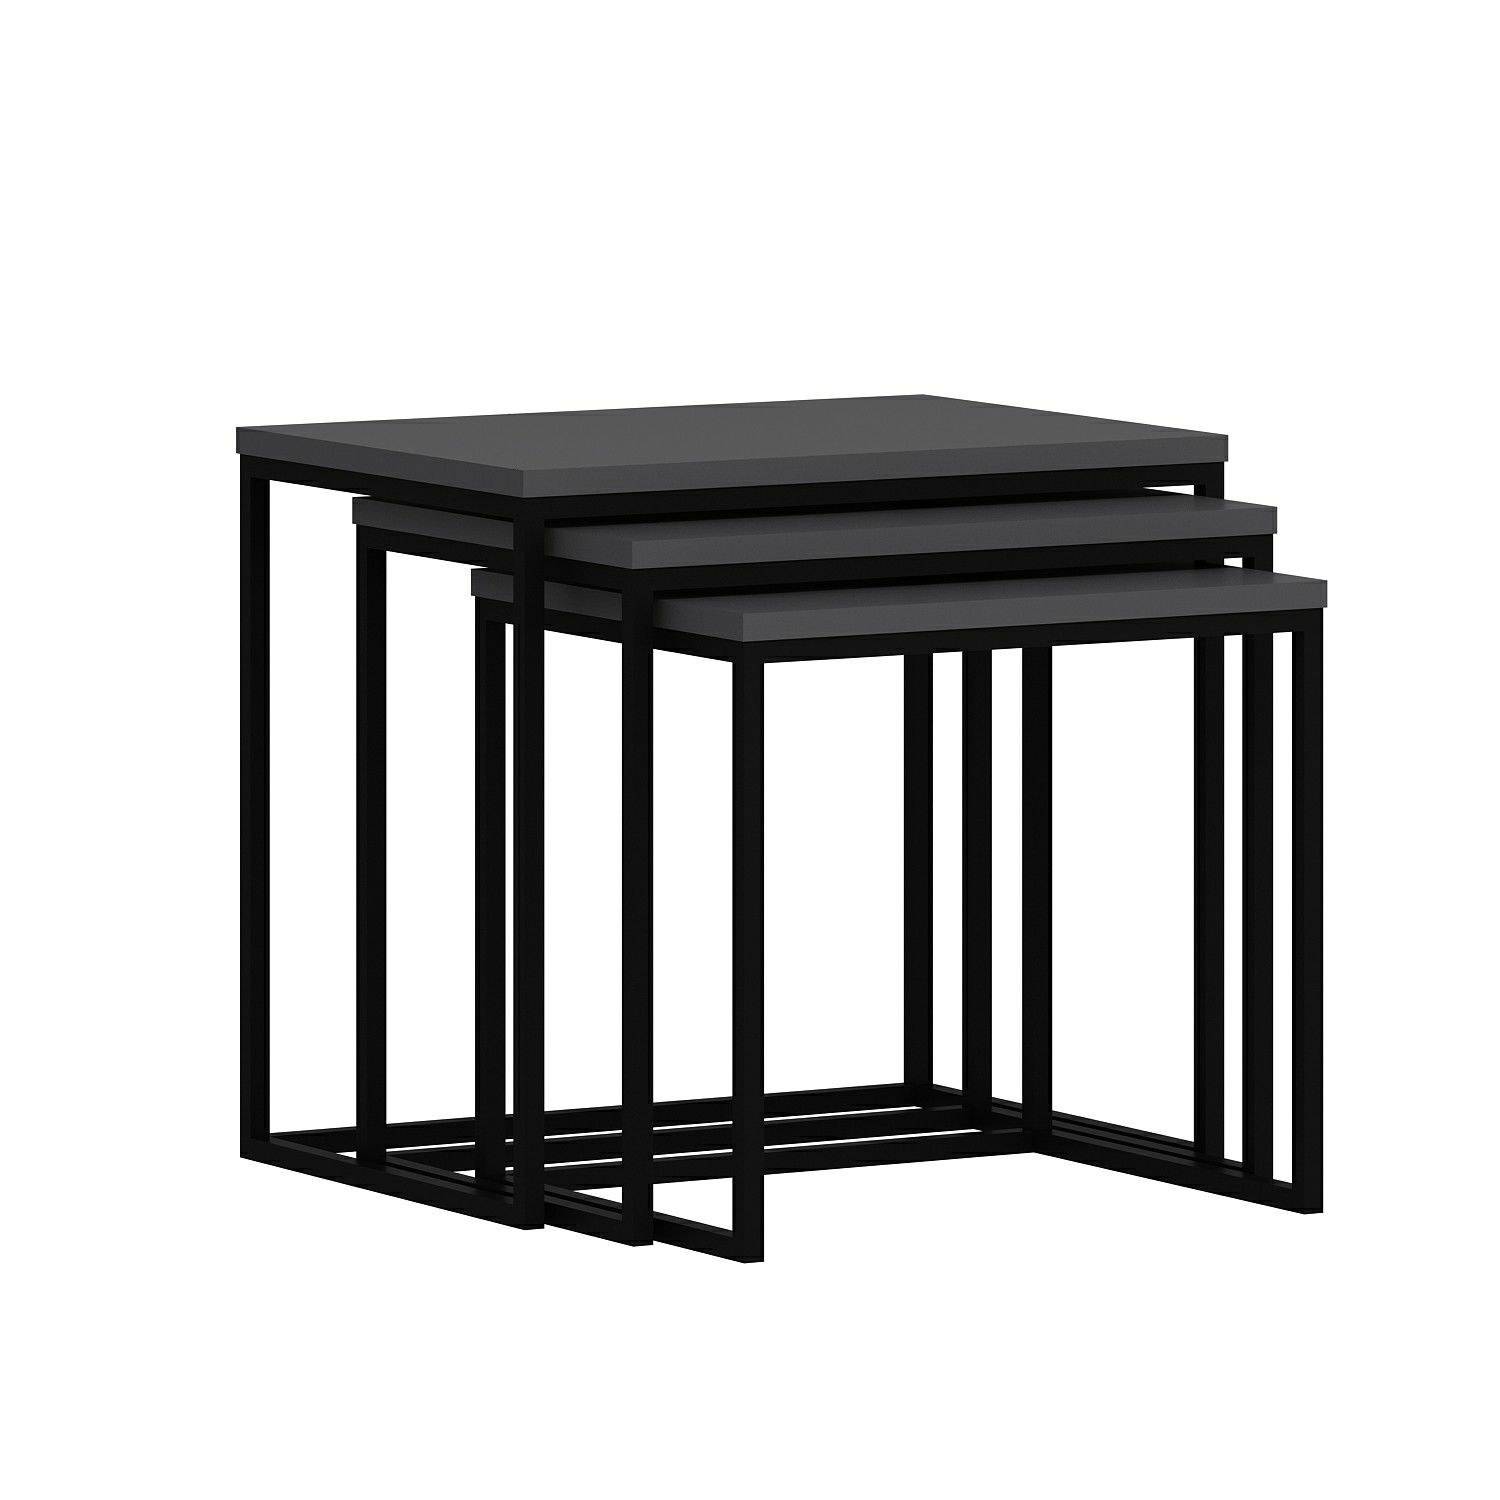 Set van 3 Gili salontafels in industriële stijl, zwart metaal en antraciet hout